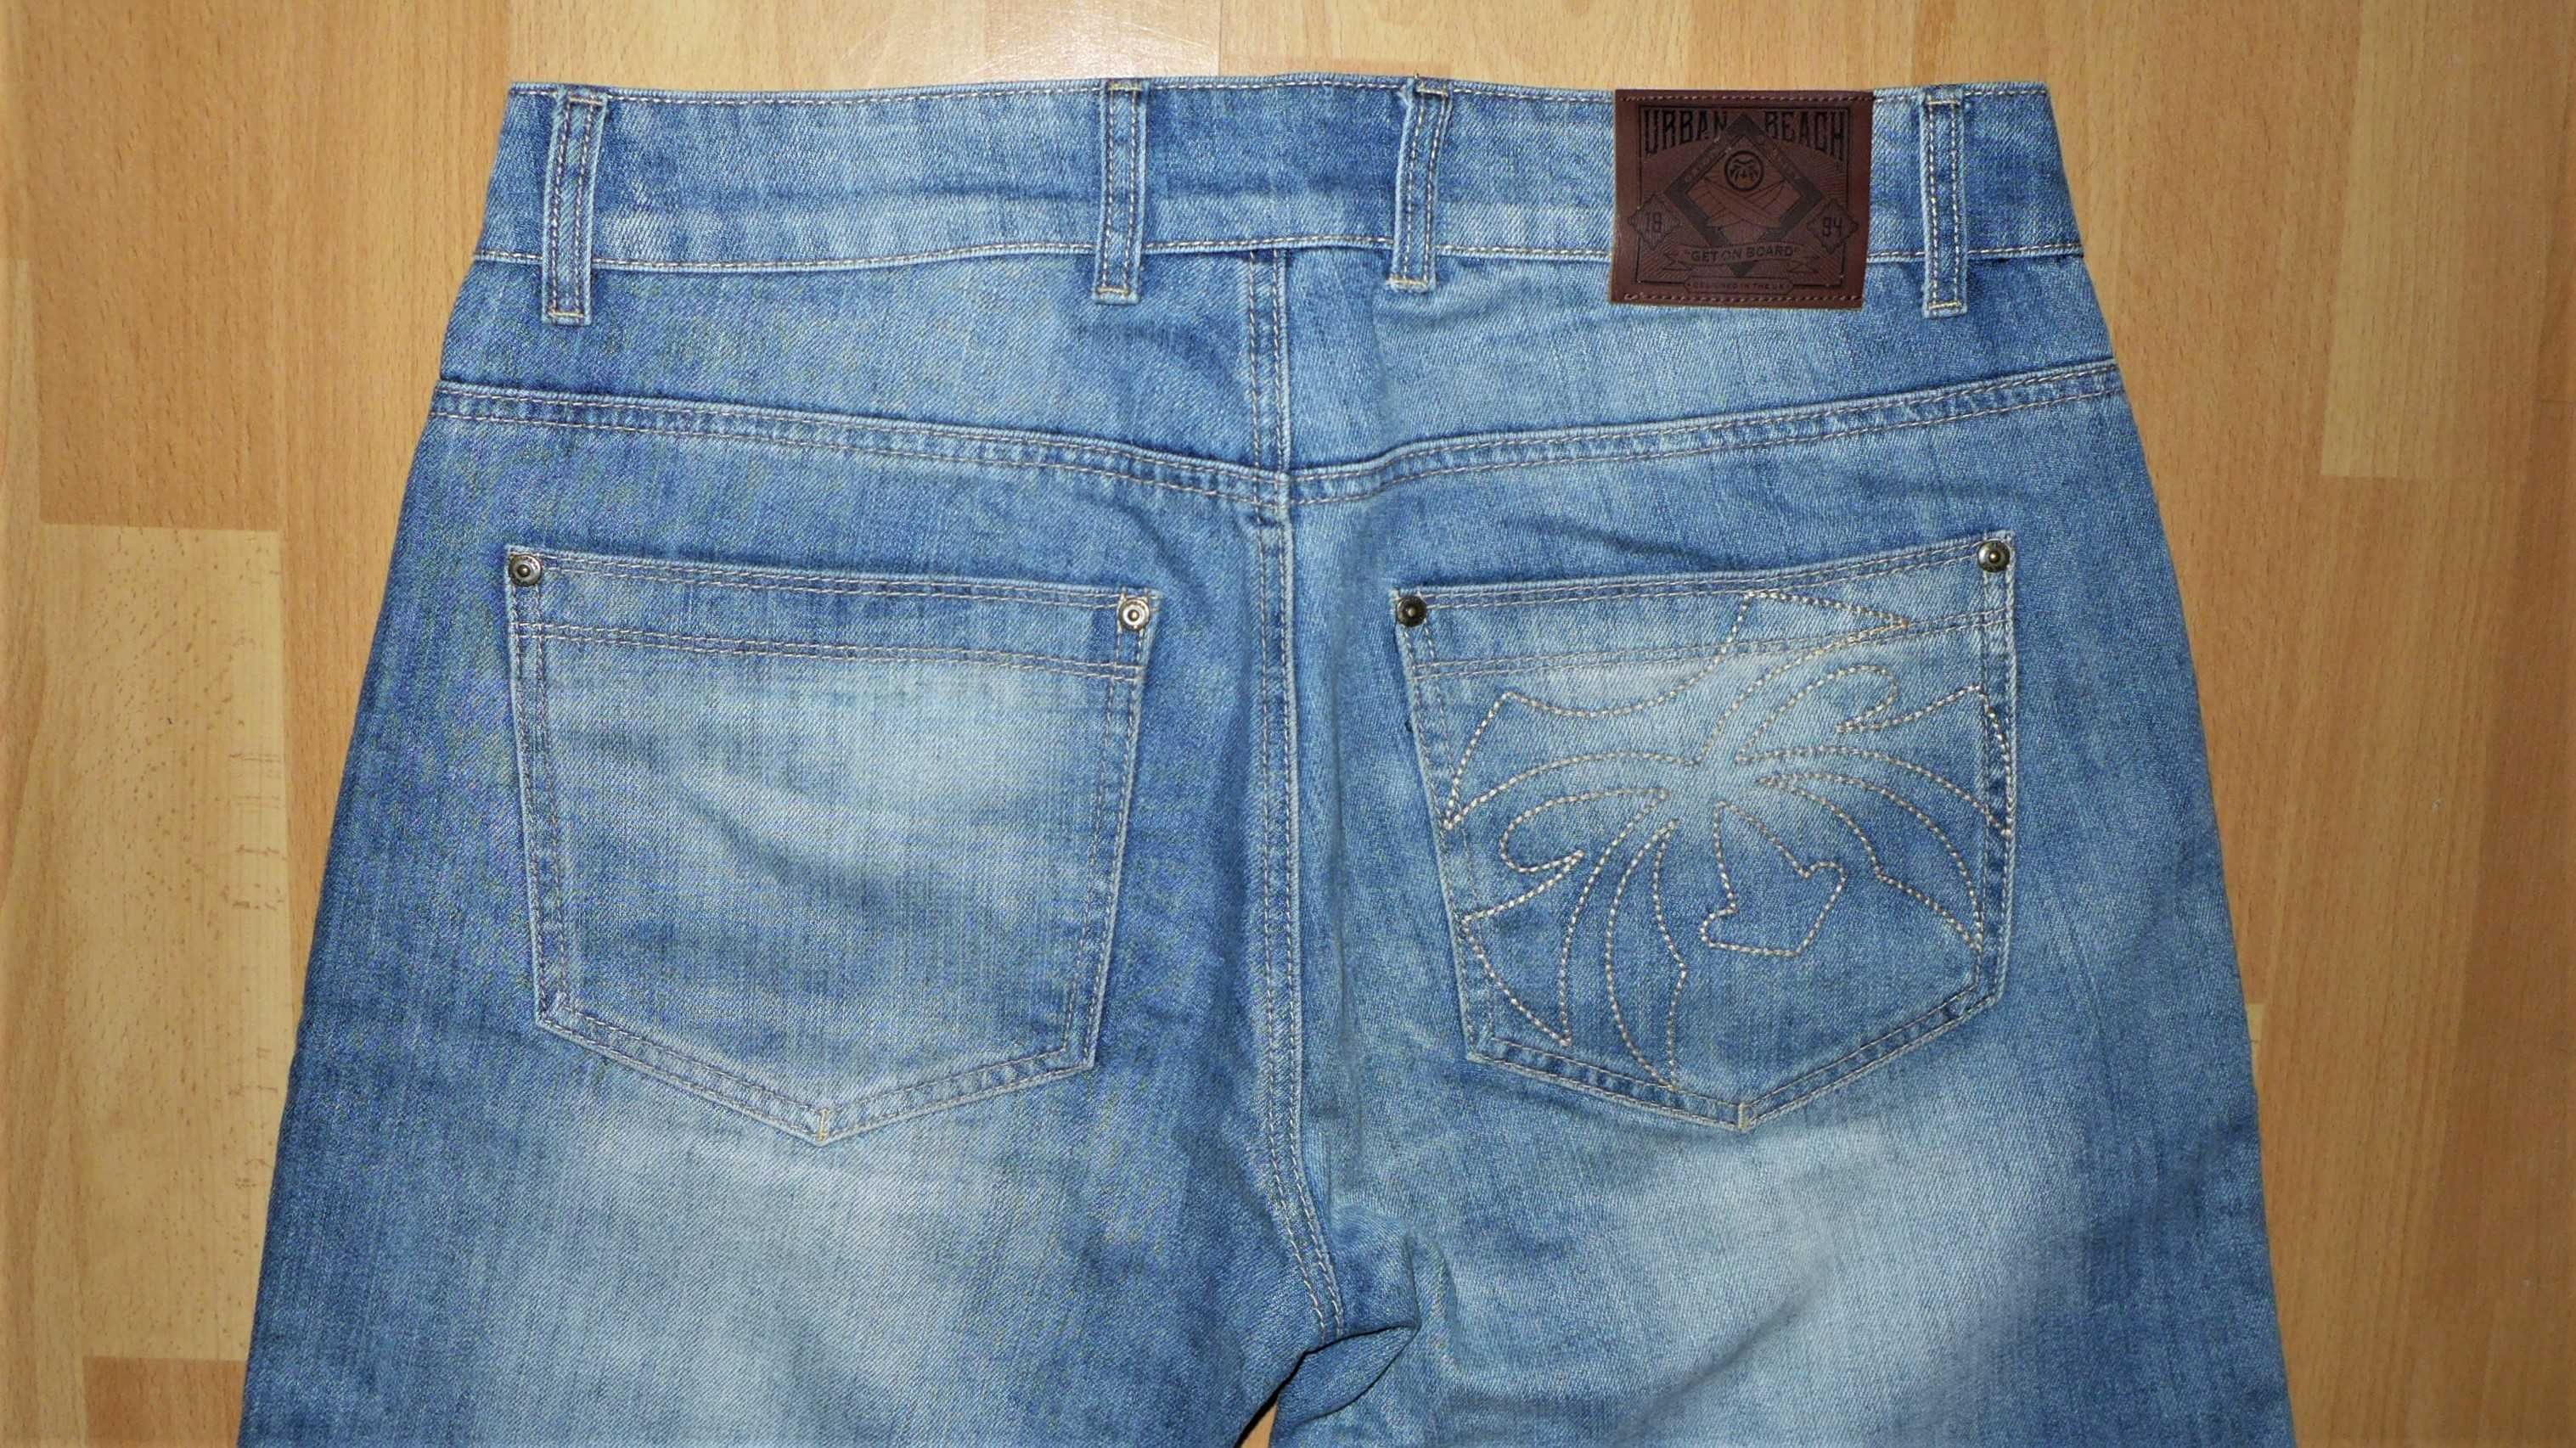 Jeansowe spodenki 32
Jeansowe spodenki 32